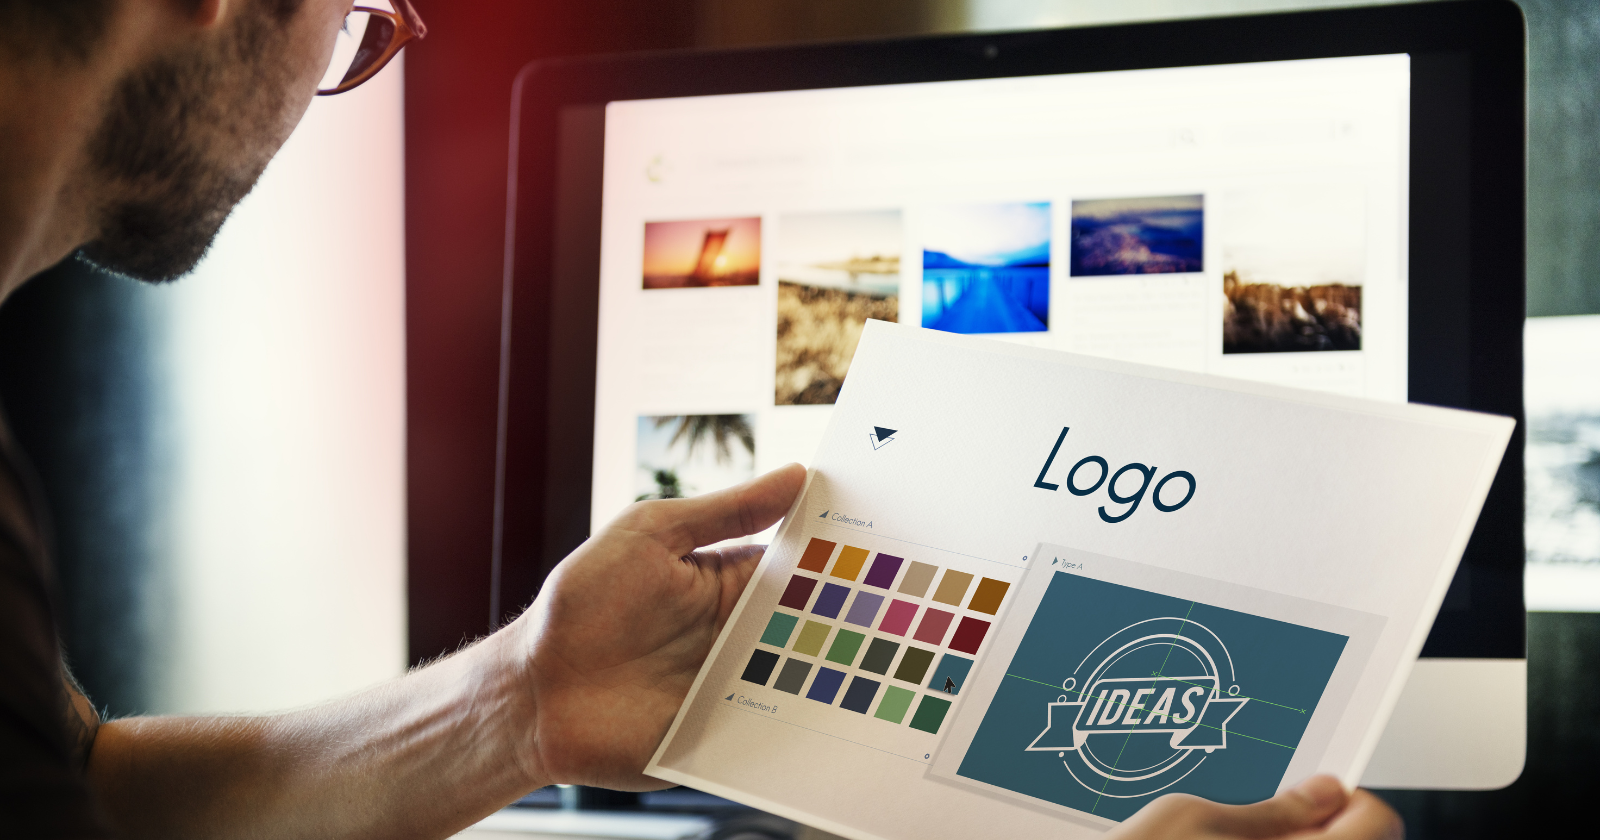 logo design images free download